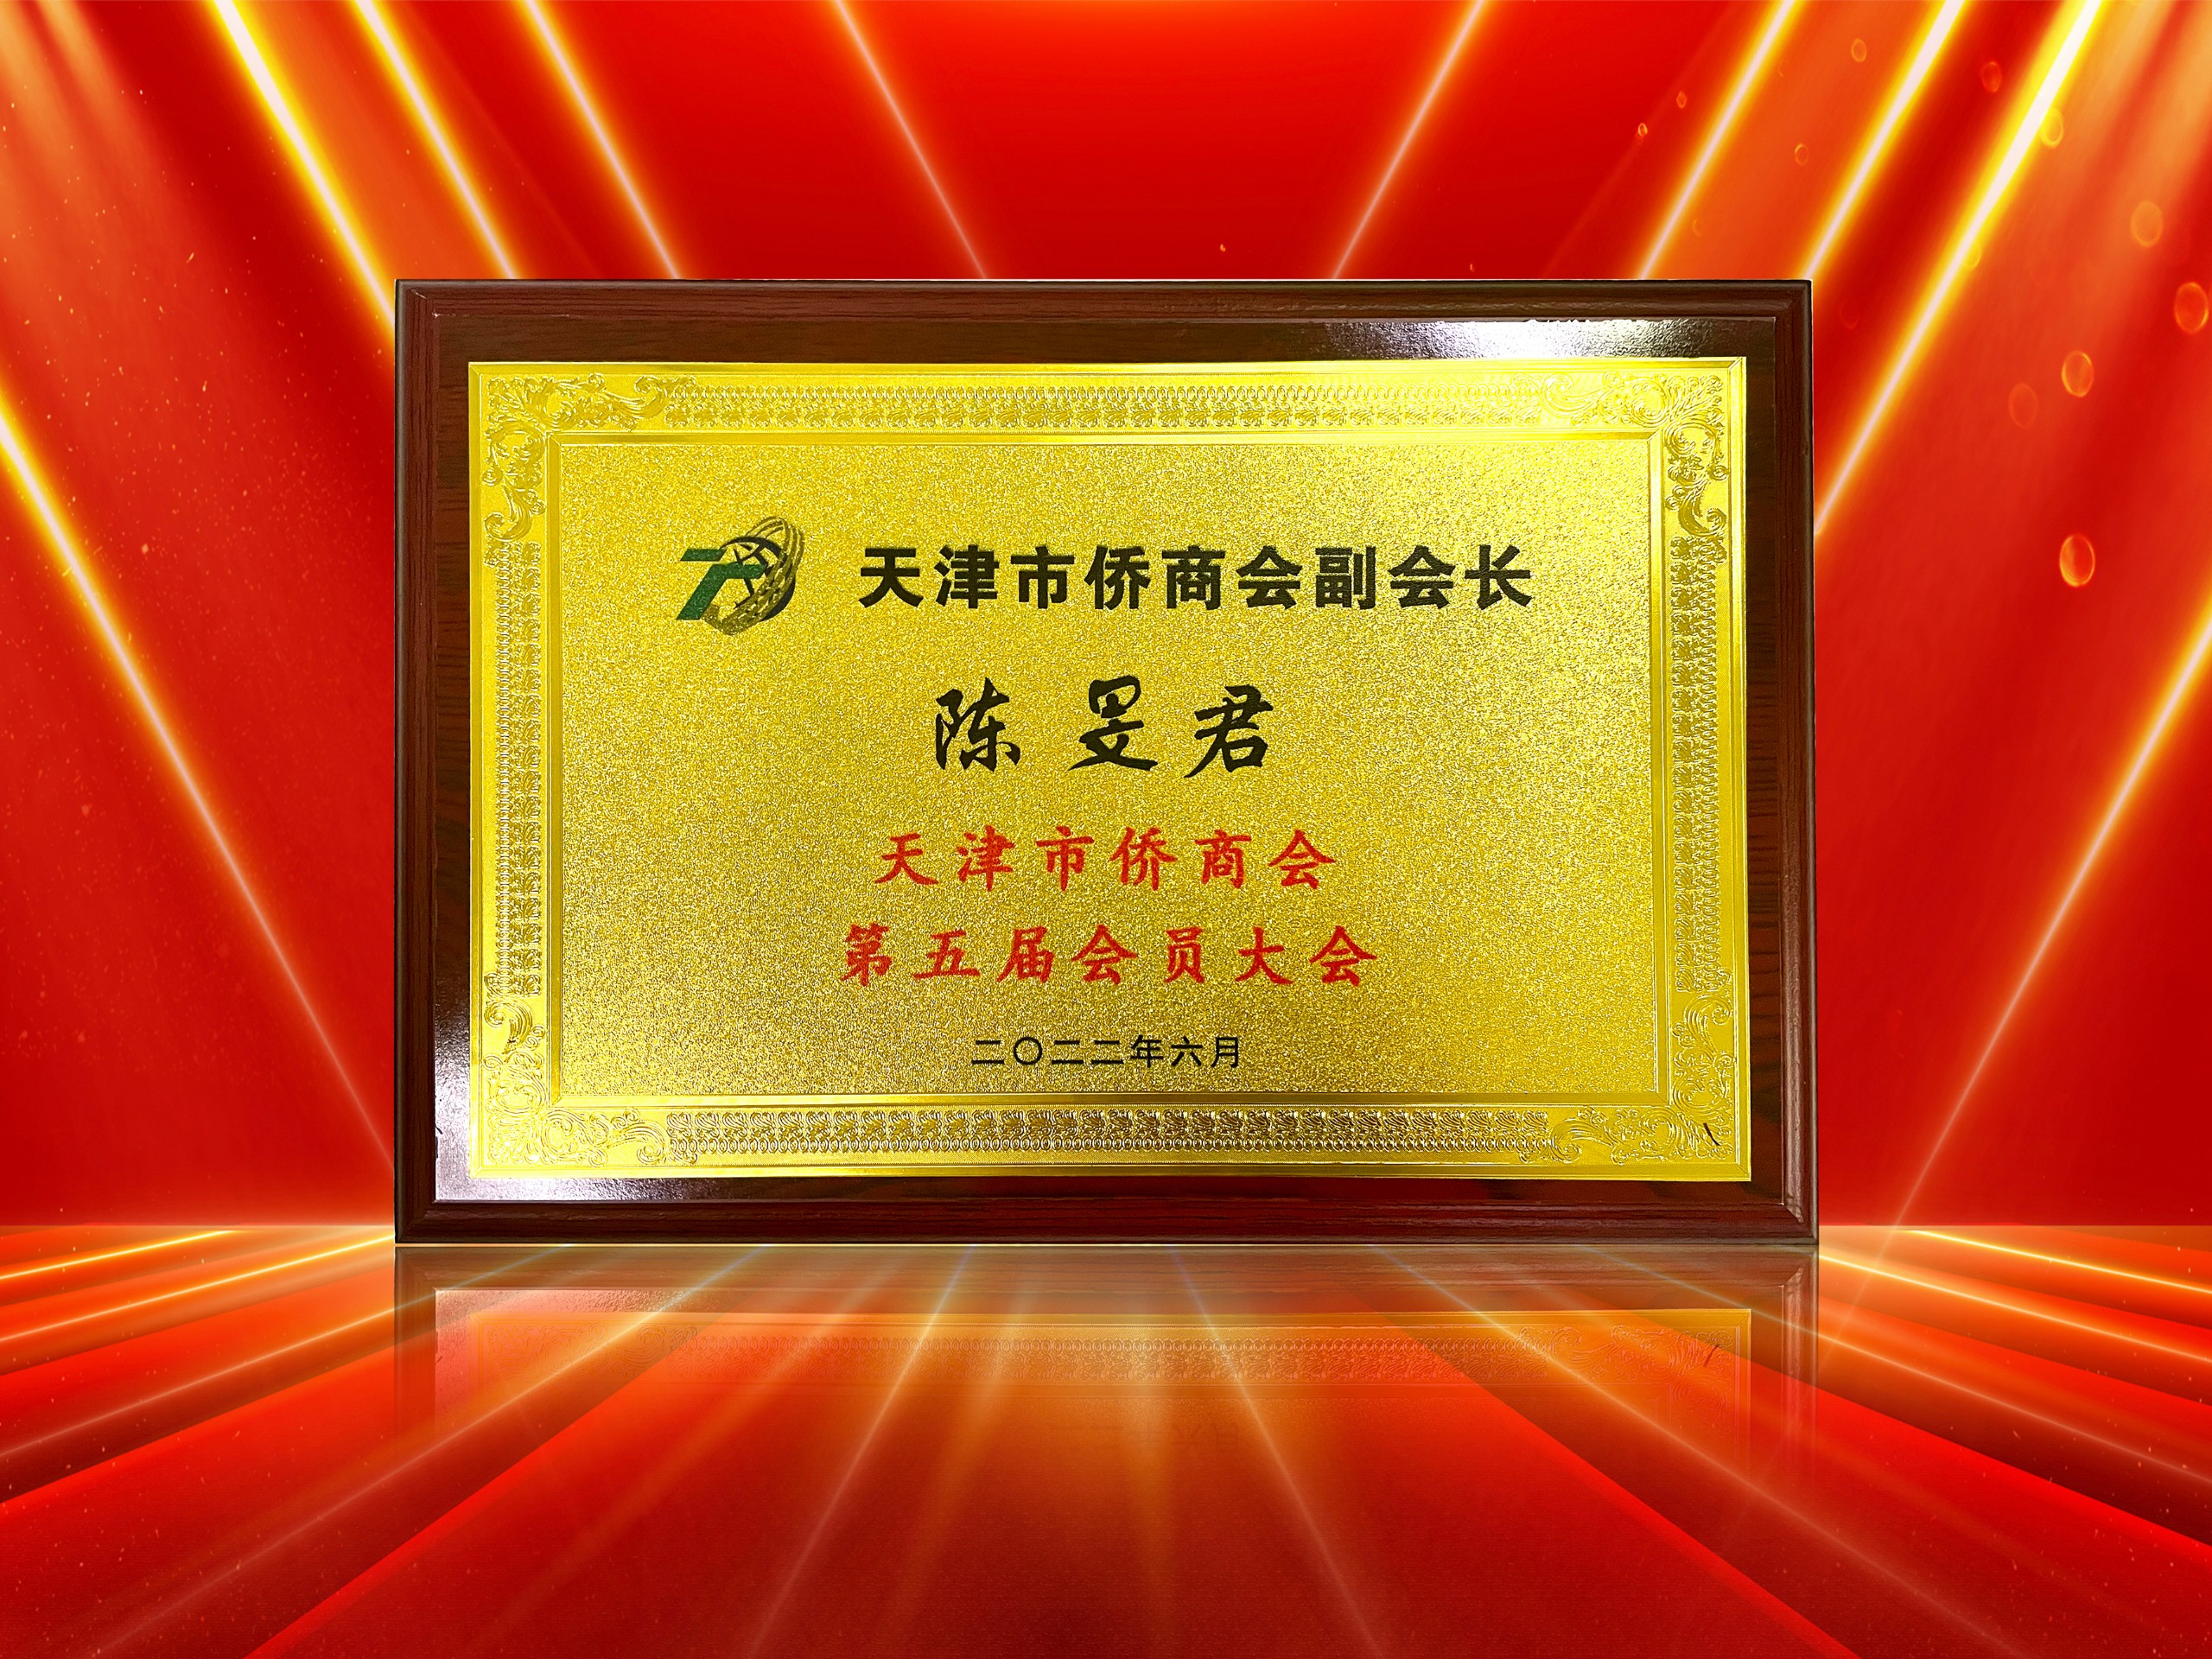 2022年6月-尚赫执行长连任-天津市侨商会副会长奖牌